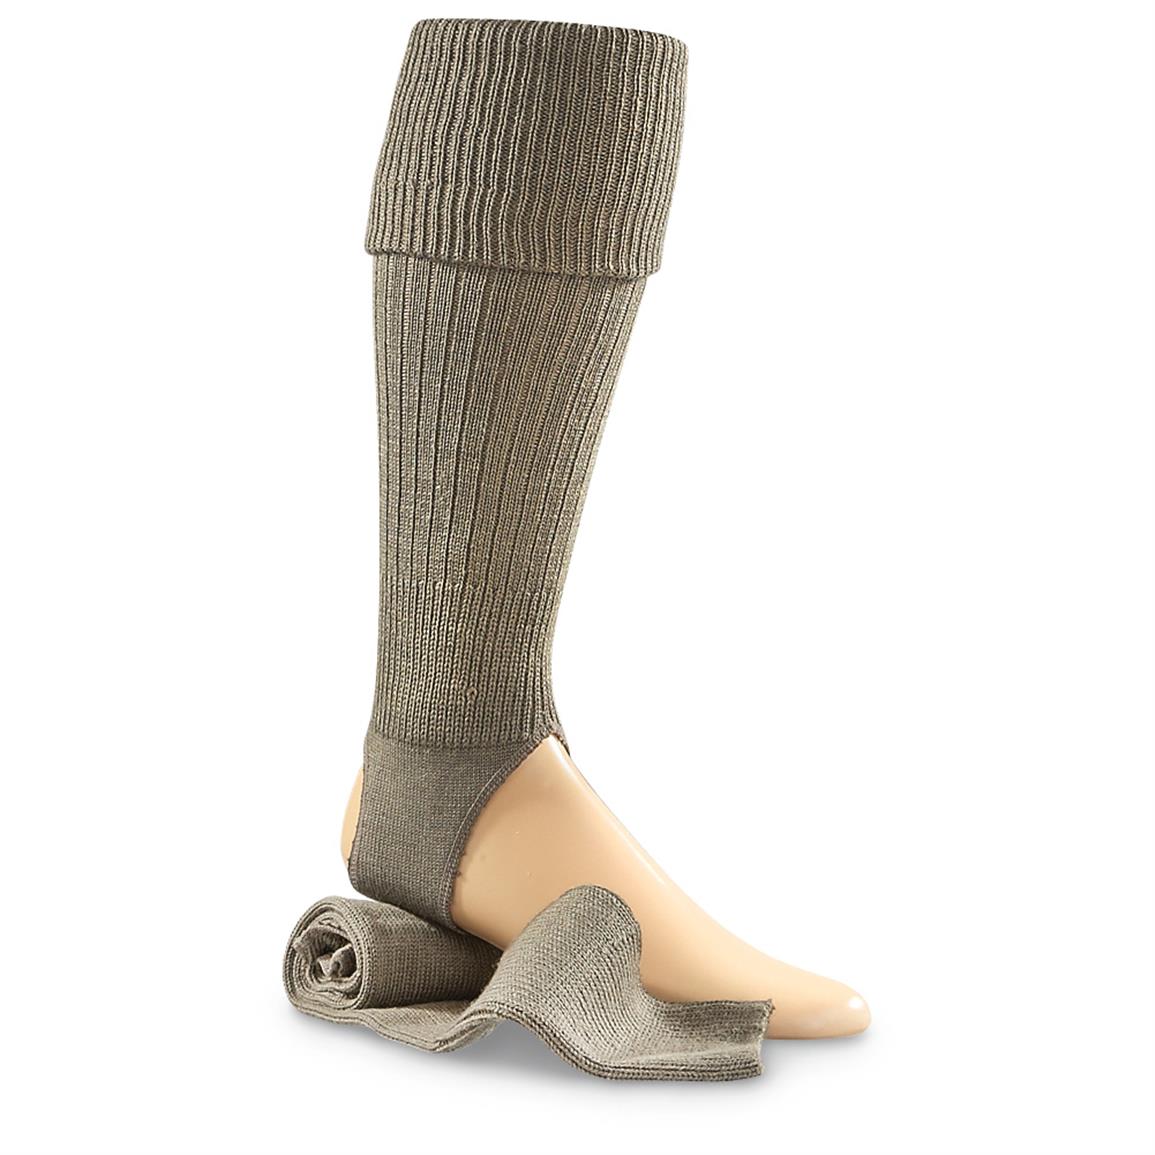 Italian Military Surplus Wool-blend Knit Stirrup Socks, 2 Pair, New